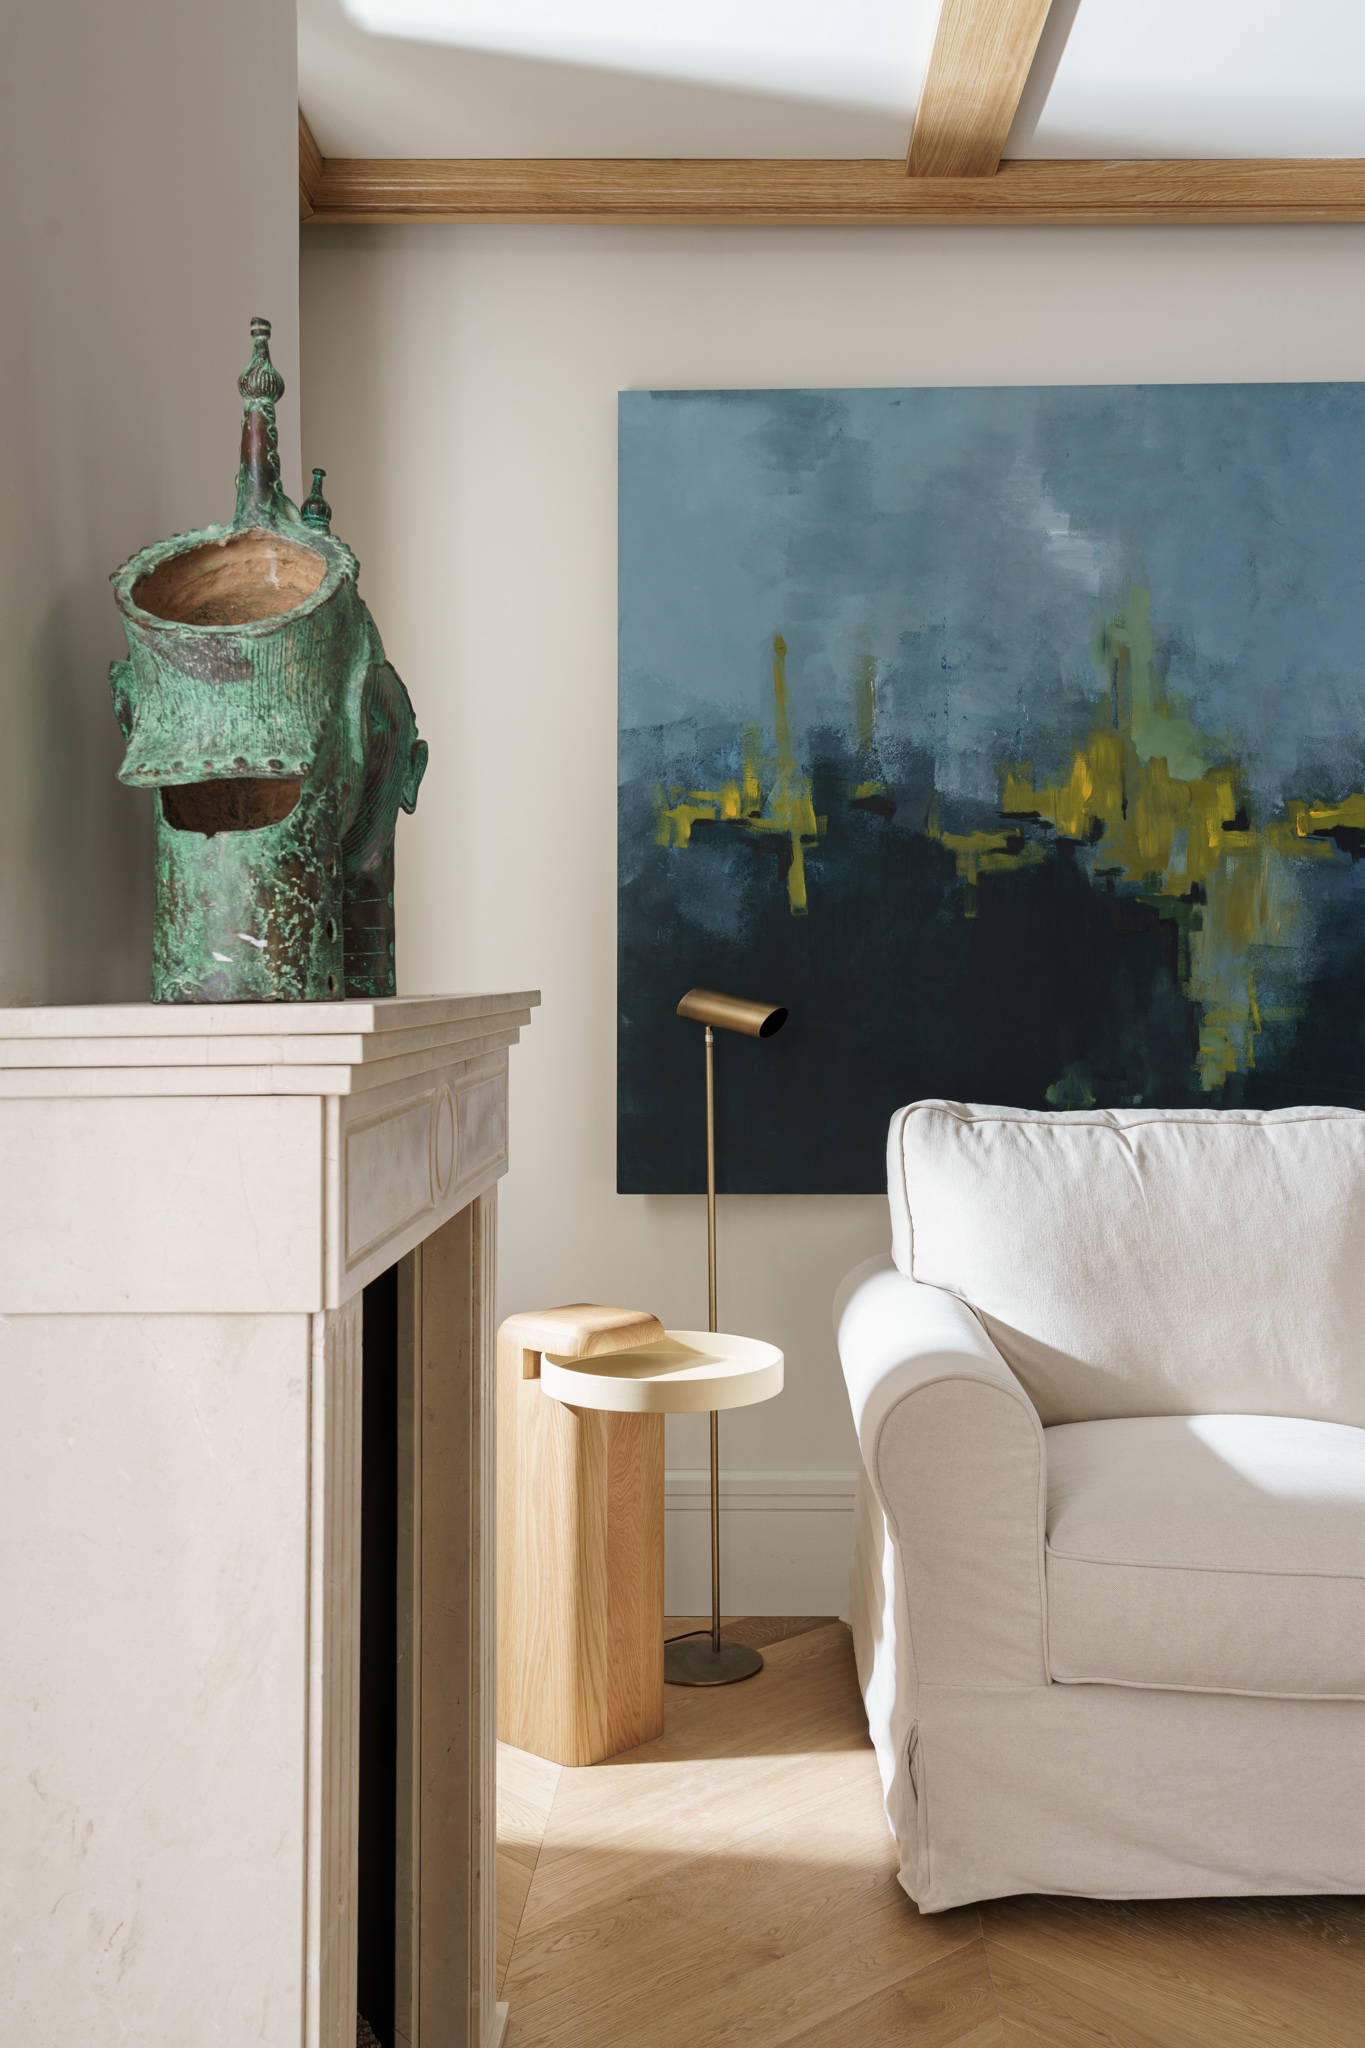 Salón con chimenea de mármol tallada a mano, sofá blanco, mesita auxiliar de madera y cuadro abstracto en la pared.